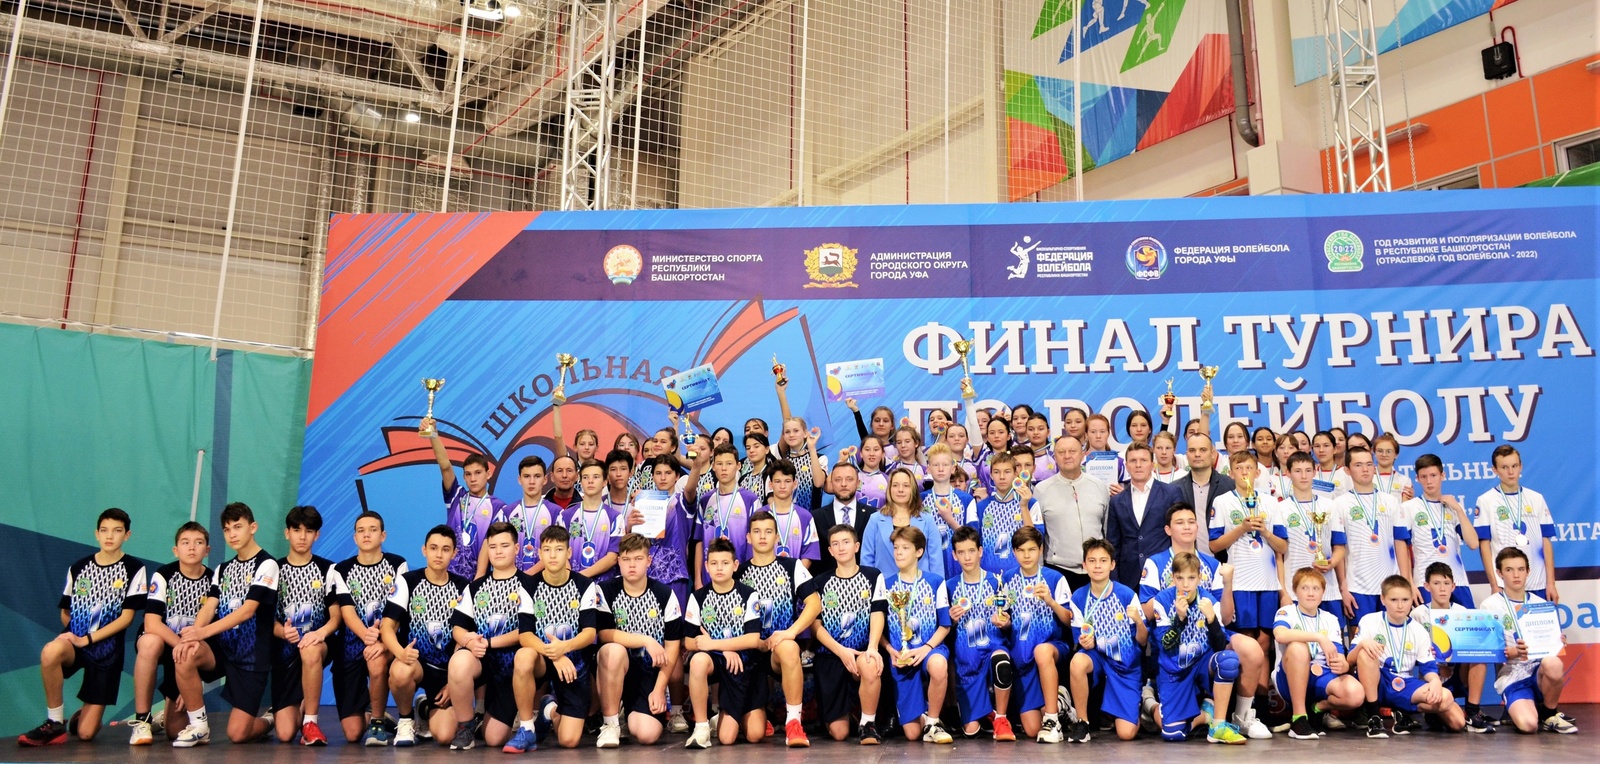 Волейбольная команда девушек Месягутовского лицея победила в финальном этапе Республиканского турнира «Школьная волейбольная лига»